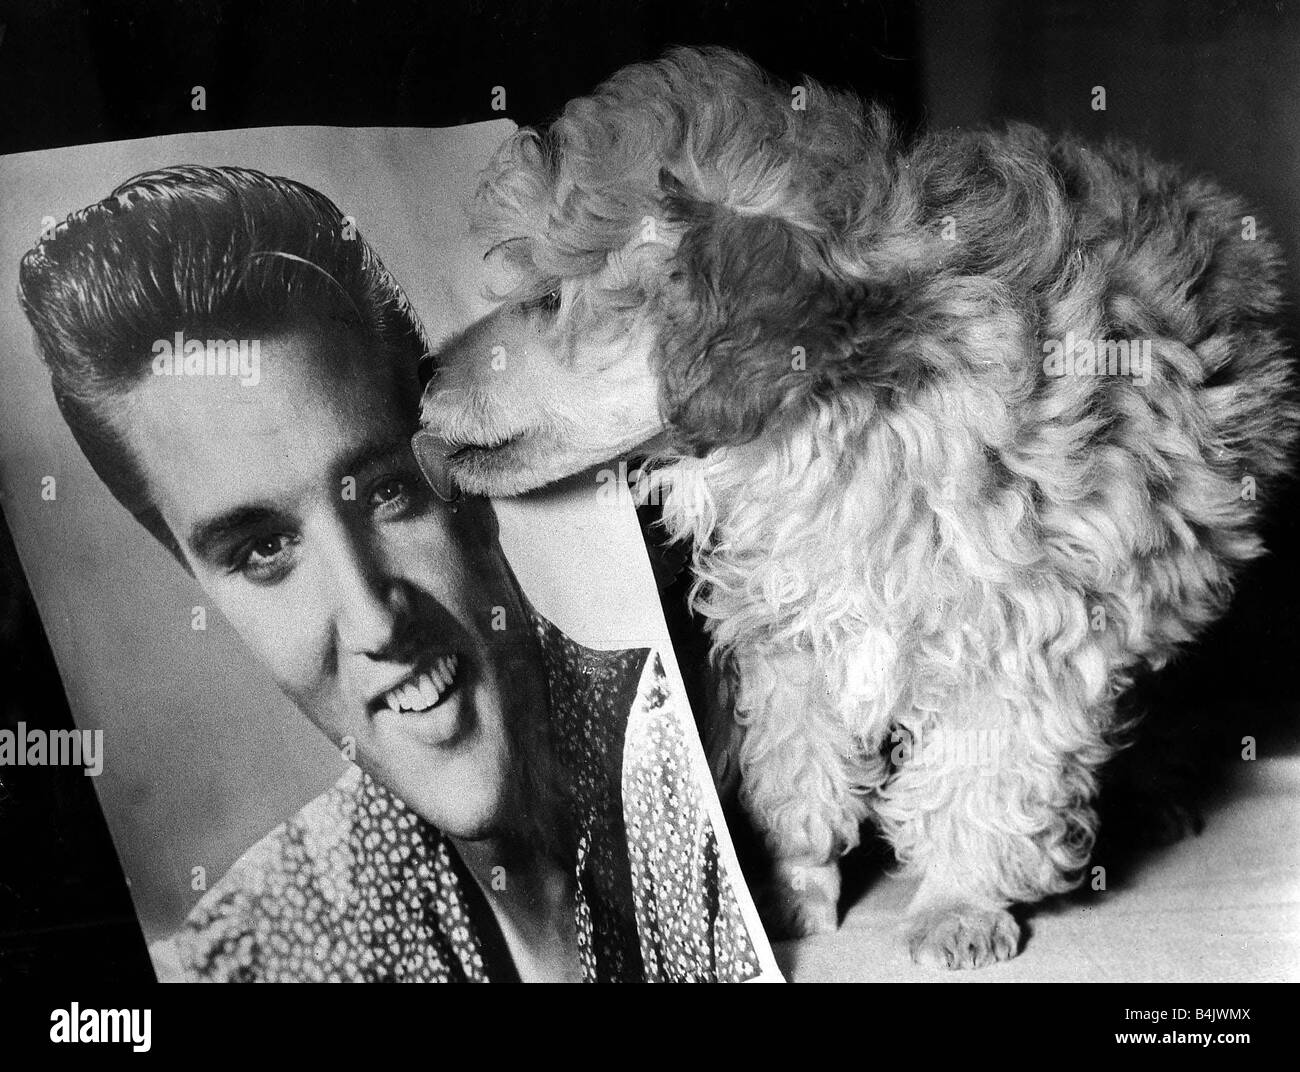 Animaux chiens caniche Toy Ours Elvis Presley Octobre 1960 10 semaine vieux caniche Toy abricot doré ours va quitter l'aéroport de Londres à Memphis pour rencontrer son nouveau maître Elvis Presley Ours lèche une photo d'Elvis Banque D'Images